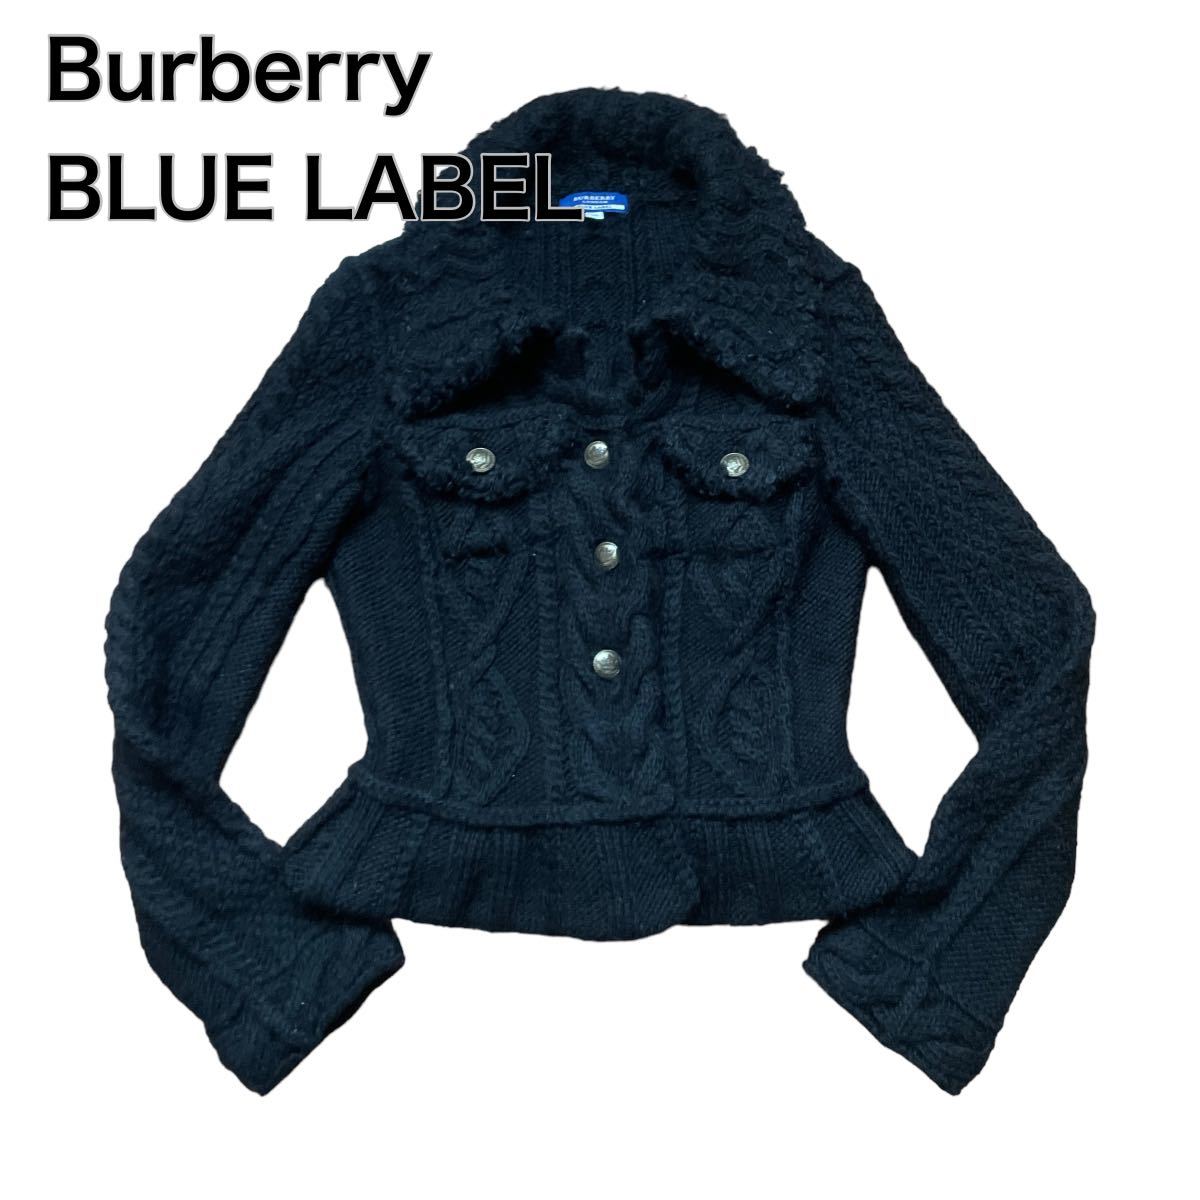 Burberry BLUE LABEL バーバリーブルーレーベル ケーブルニット カーディガン 銀ボタン黒ブラック 38 M三陽商会